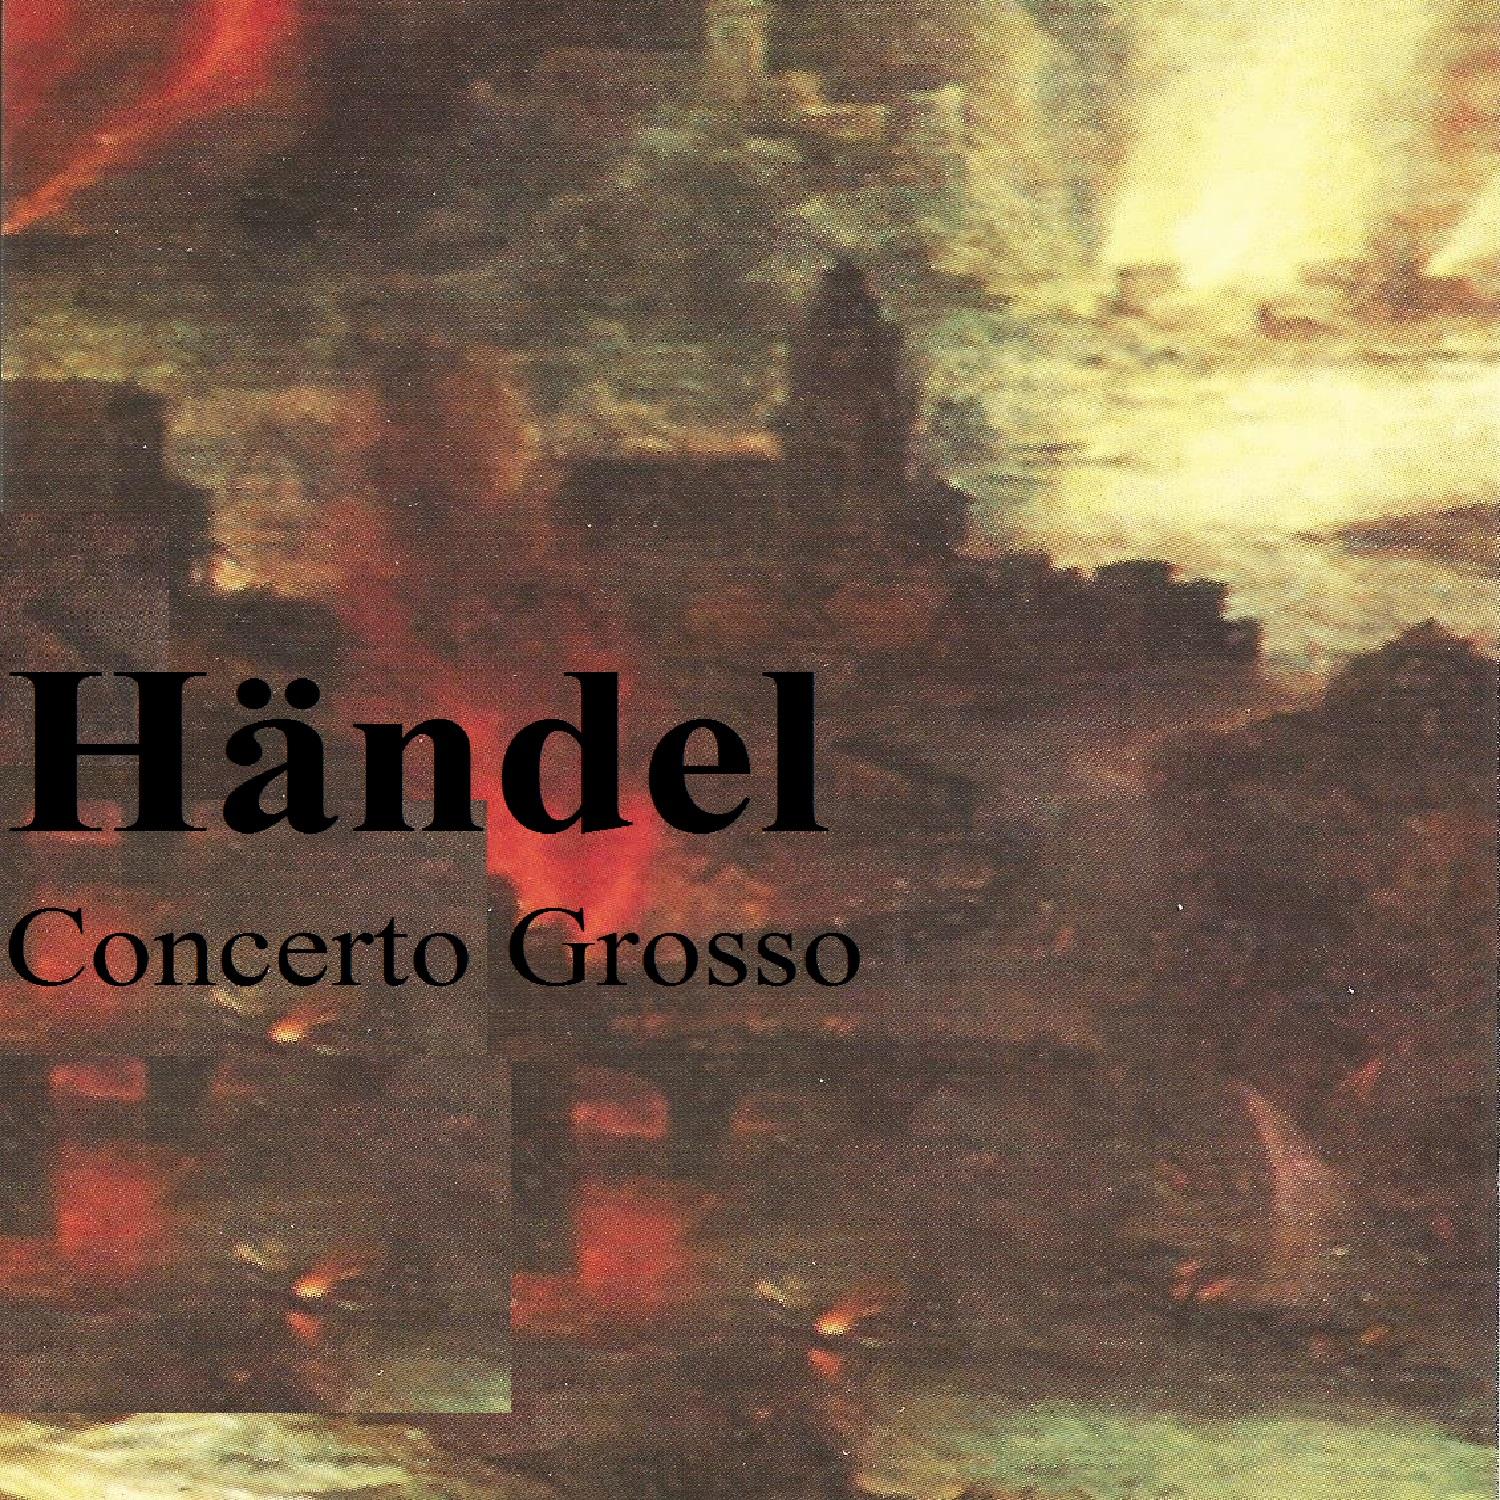 Concerto Grosso in G Minor, HWV 324: II. A tempo giusto